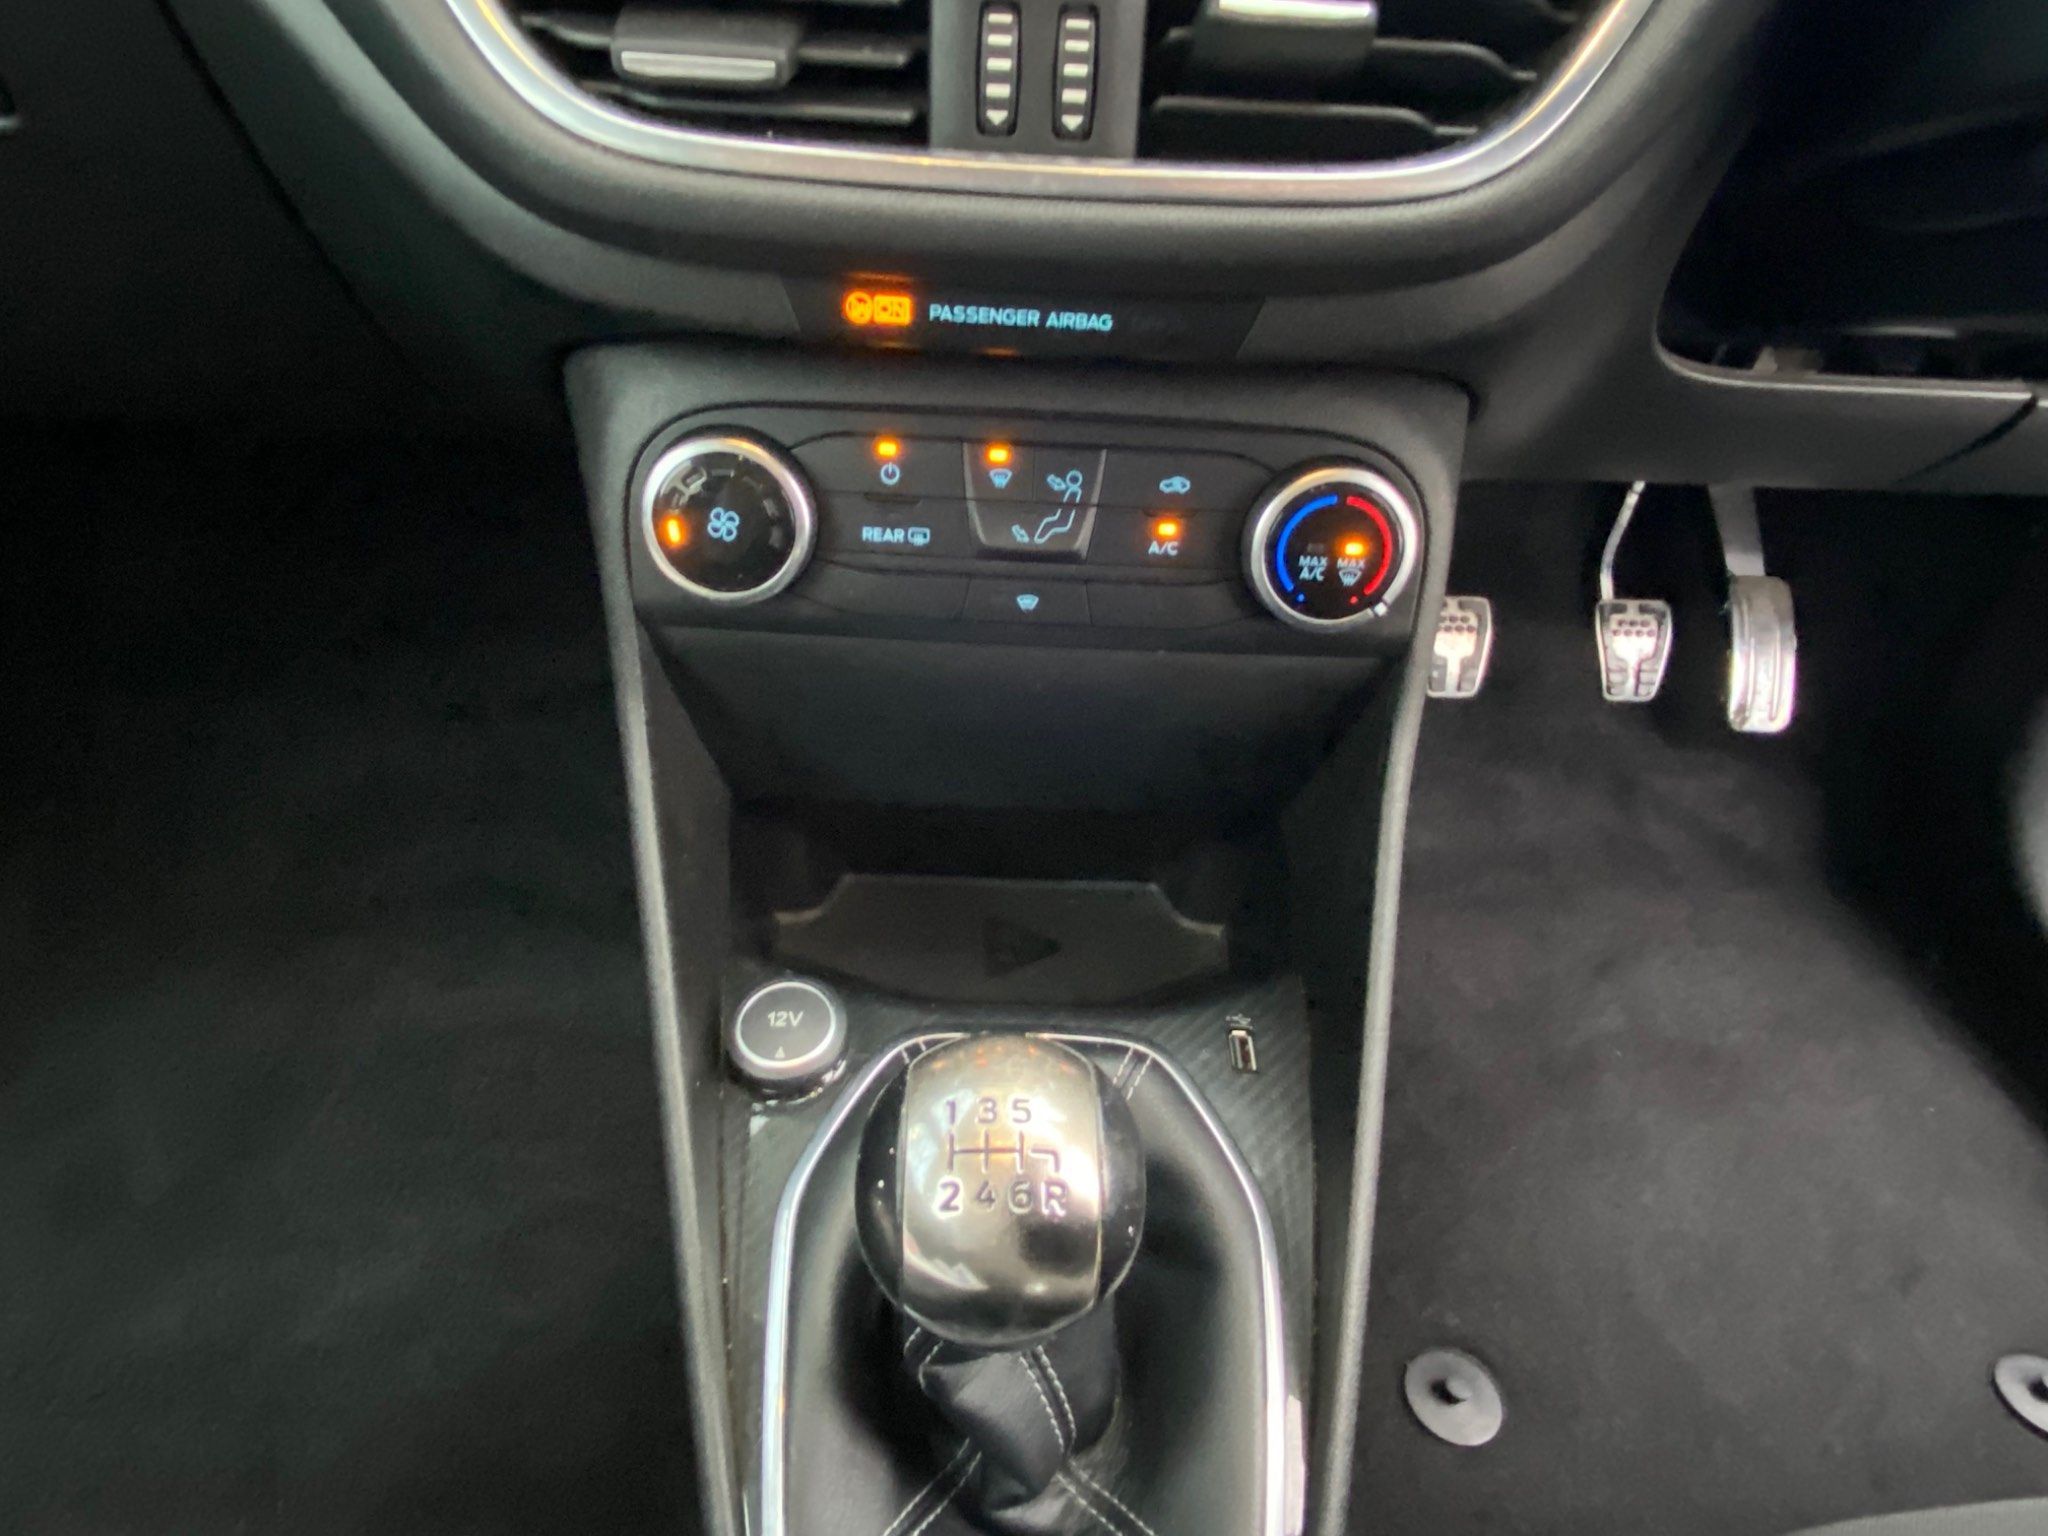 2018 Ford Fiesta EcoBoost ST-Line full